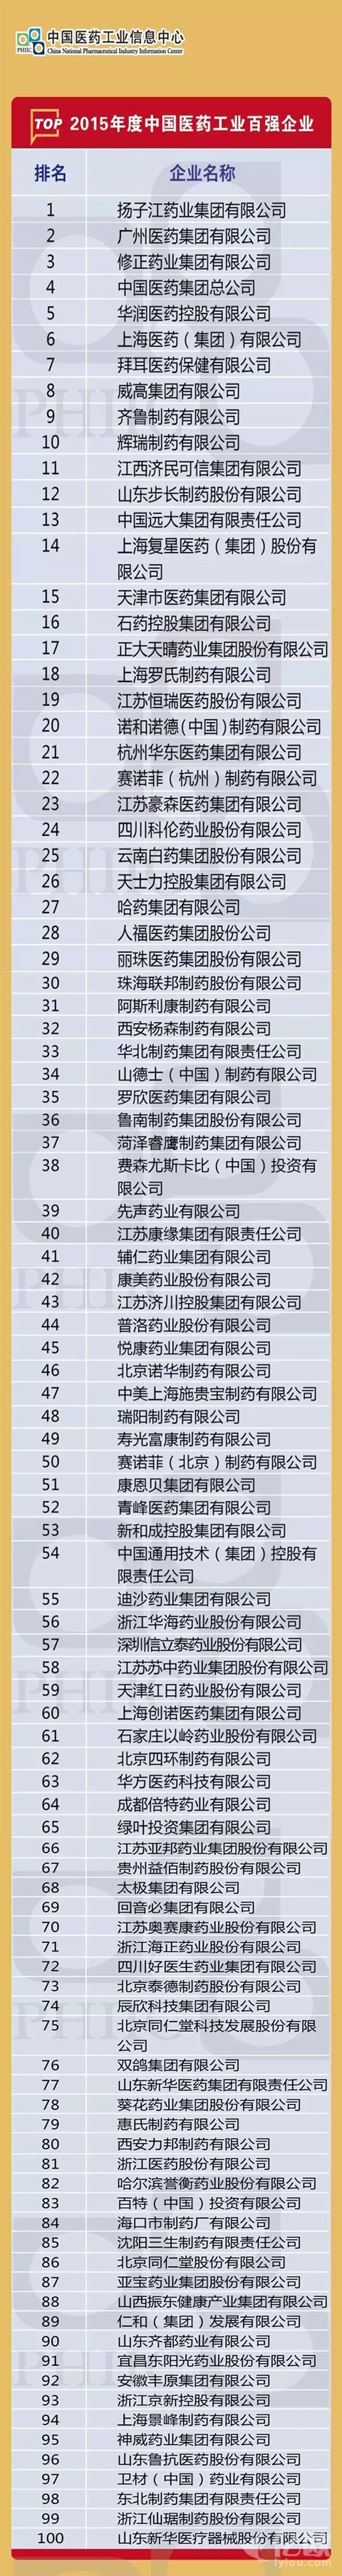 《2015年度中国医药工业百强企业TOP100》最新发布